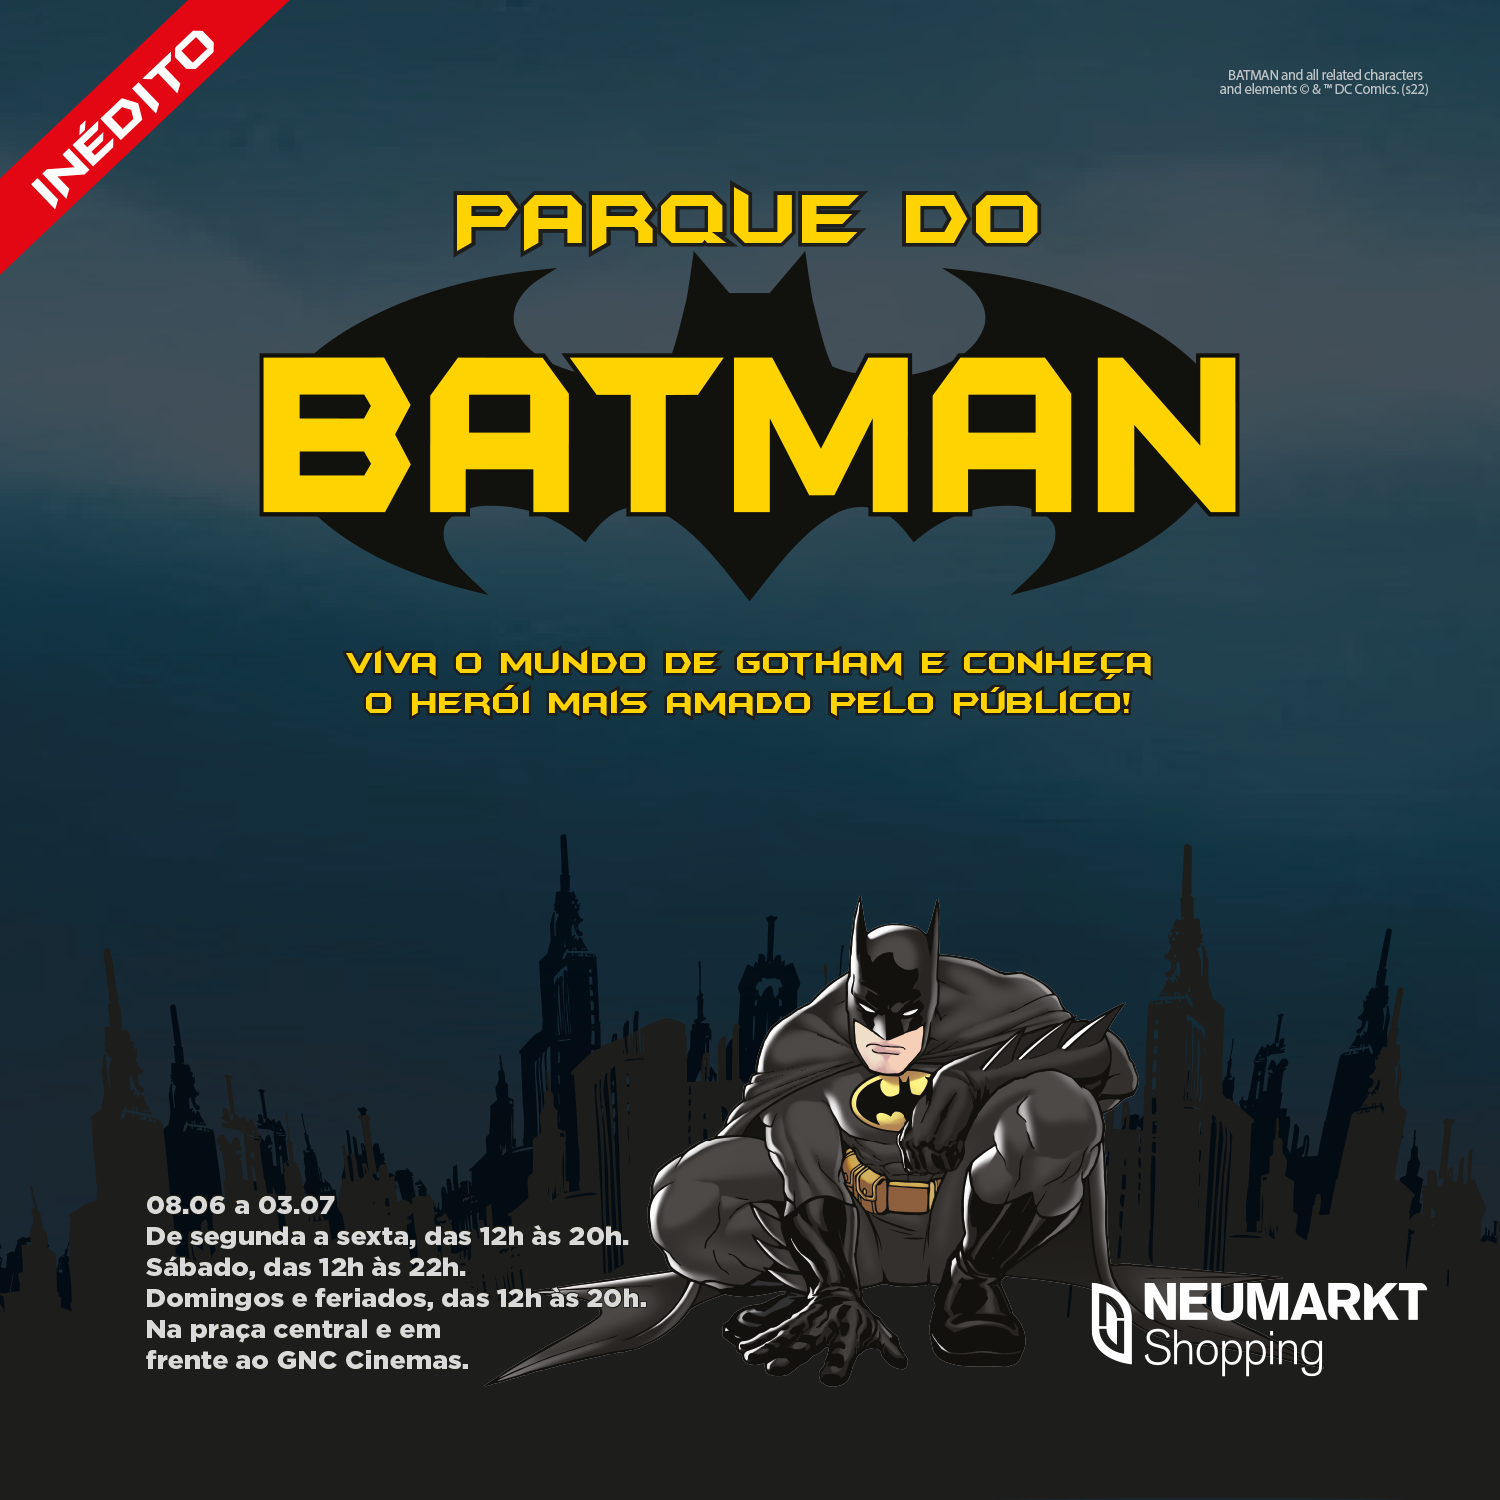 Parque do Batman – Gotham City” chega em Blumenau - Acontece - Neumarkt  Shopping